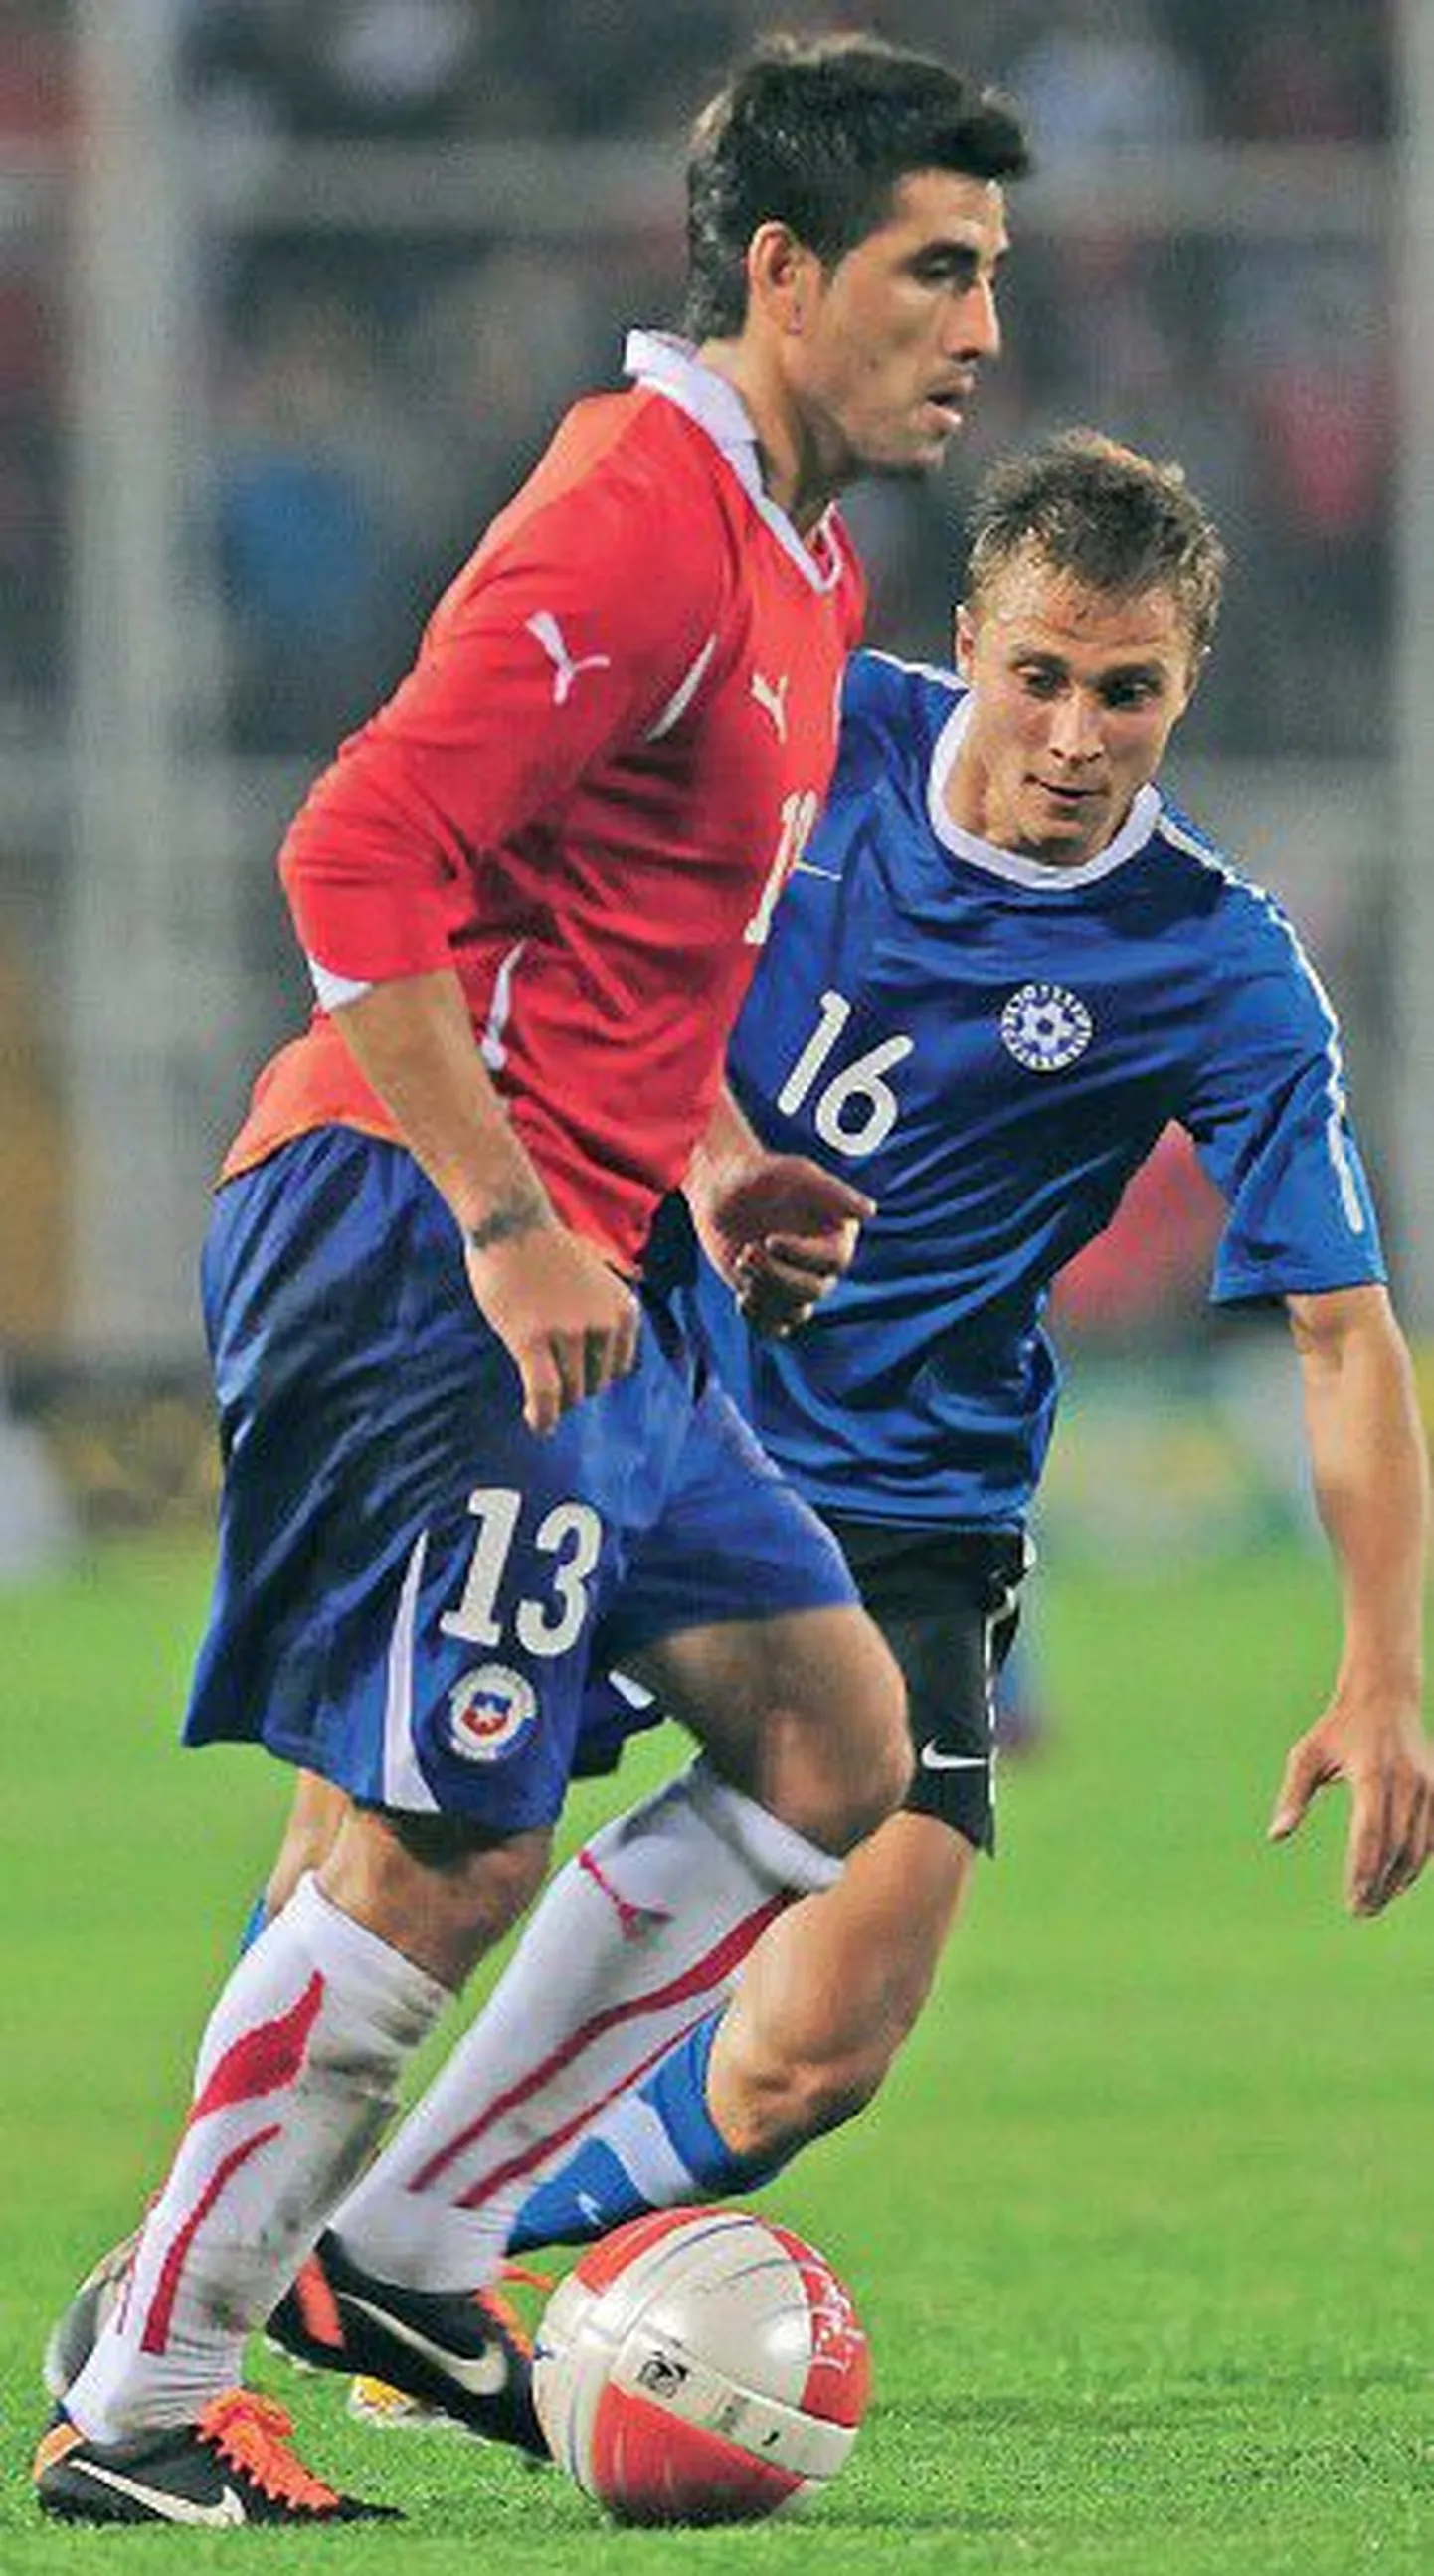 Сборная Эстонии в субботу в Сантьяго играла с командой Чили: на поле Марко Эстрада (13) и Герт Камс (16).